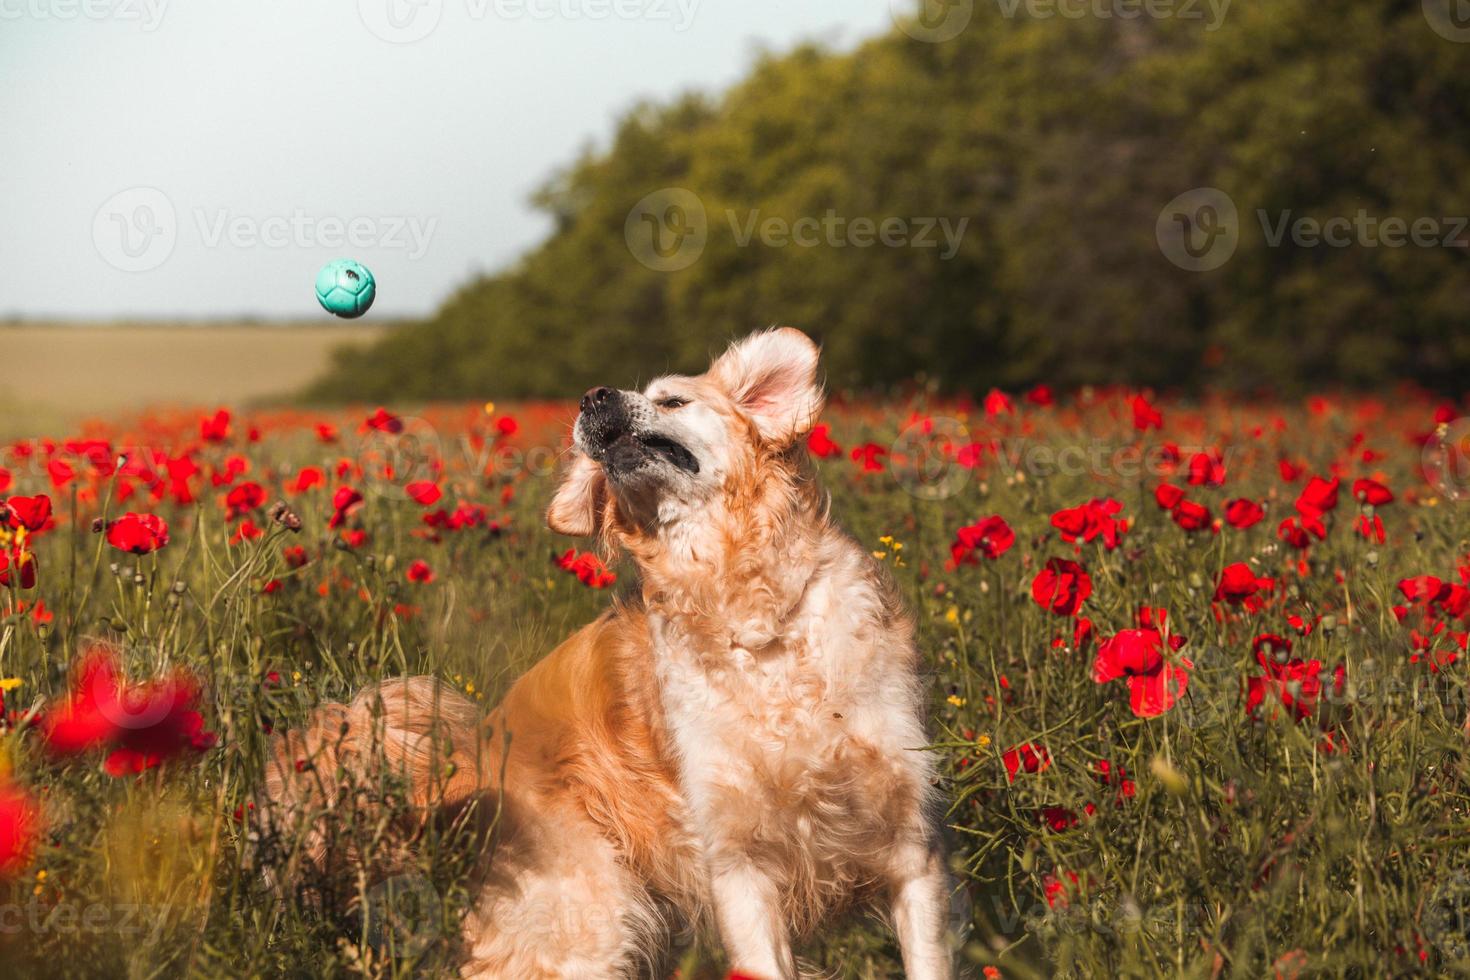 Labrador retriever dog. Golden retriever dog on grass. adorable dog in poppy flowers. photo